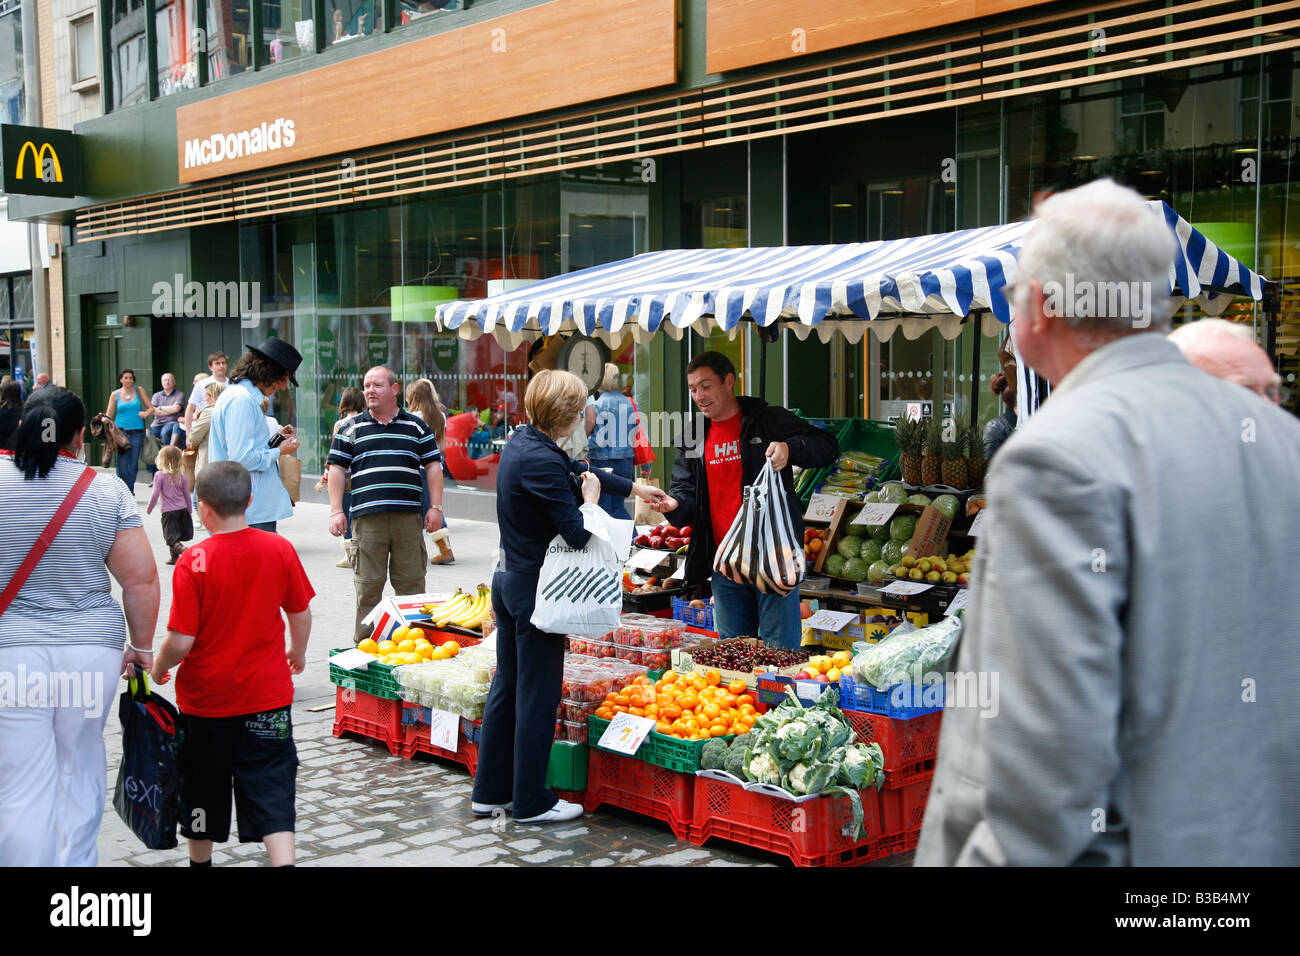 Juillet 2008 - stand de fruits et légumes sur Lord Street une rue piétonne avec de nombreux magasins Liverpool Angleterre UK Banque D'Images